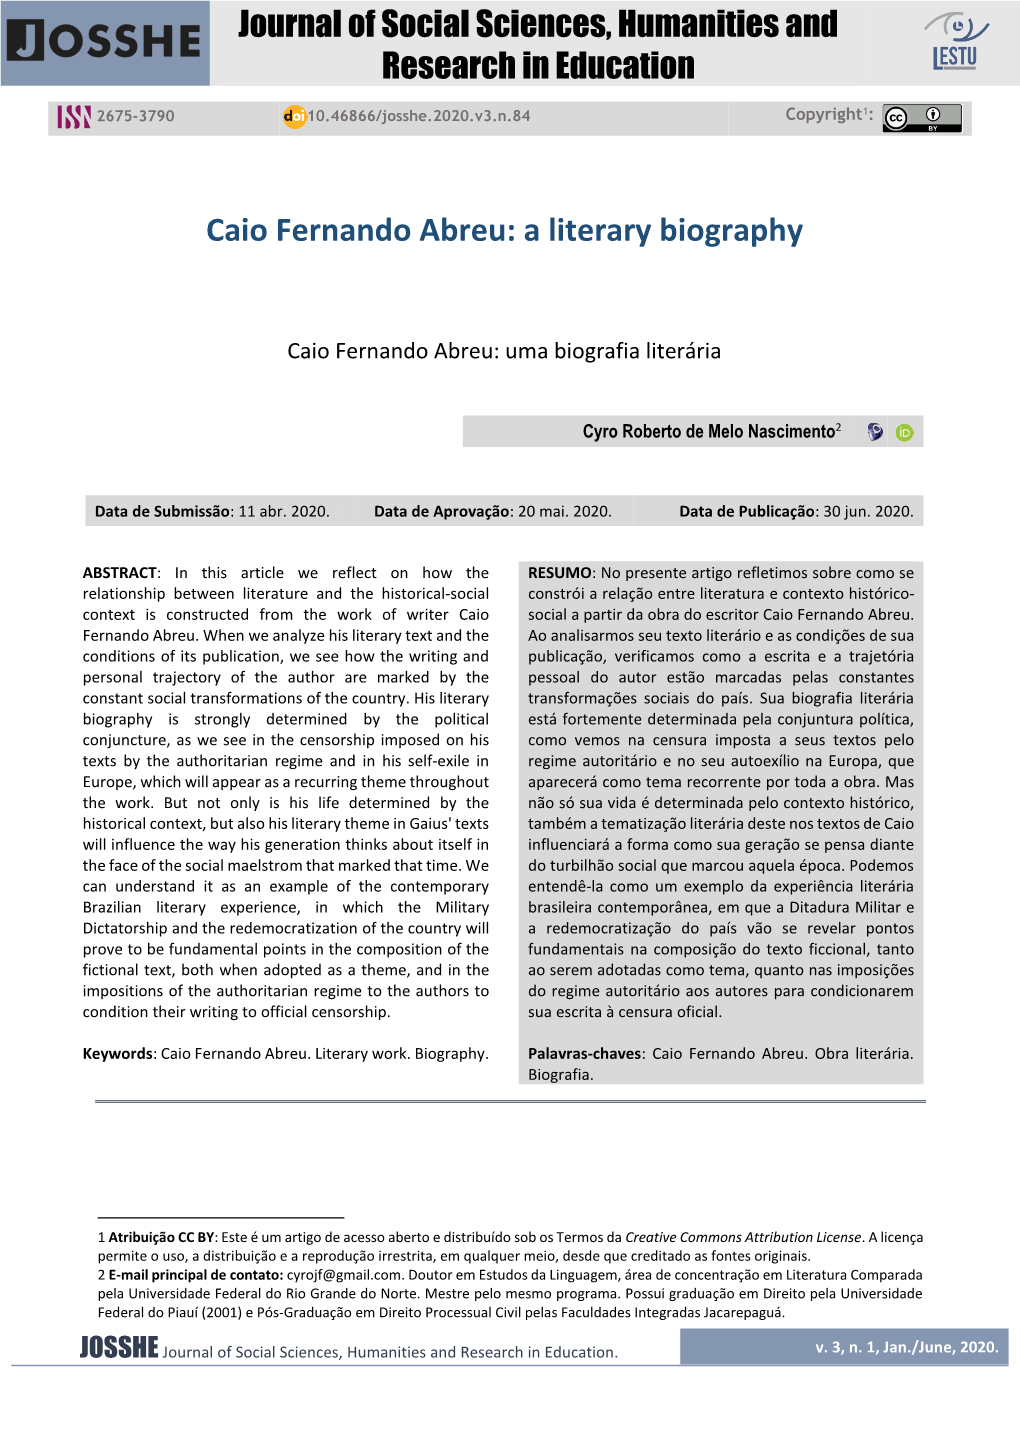 Caio Fernando Abreu: a Literary Biography